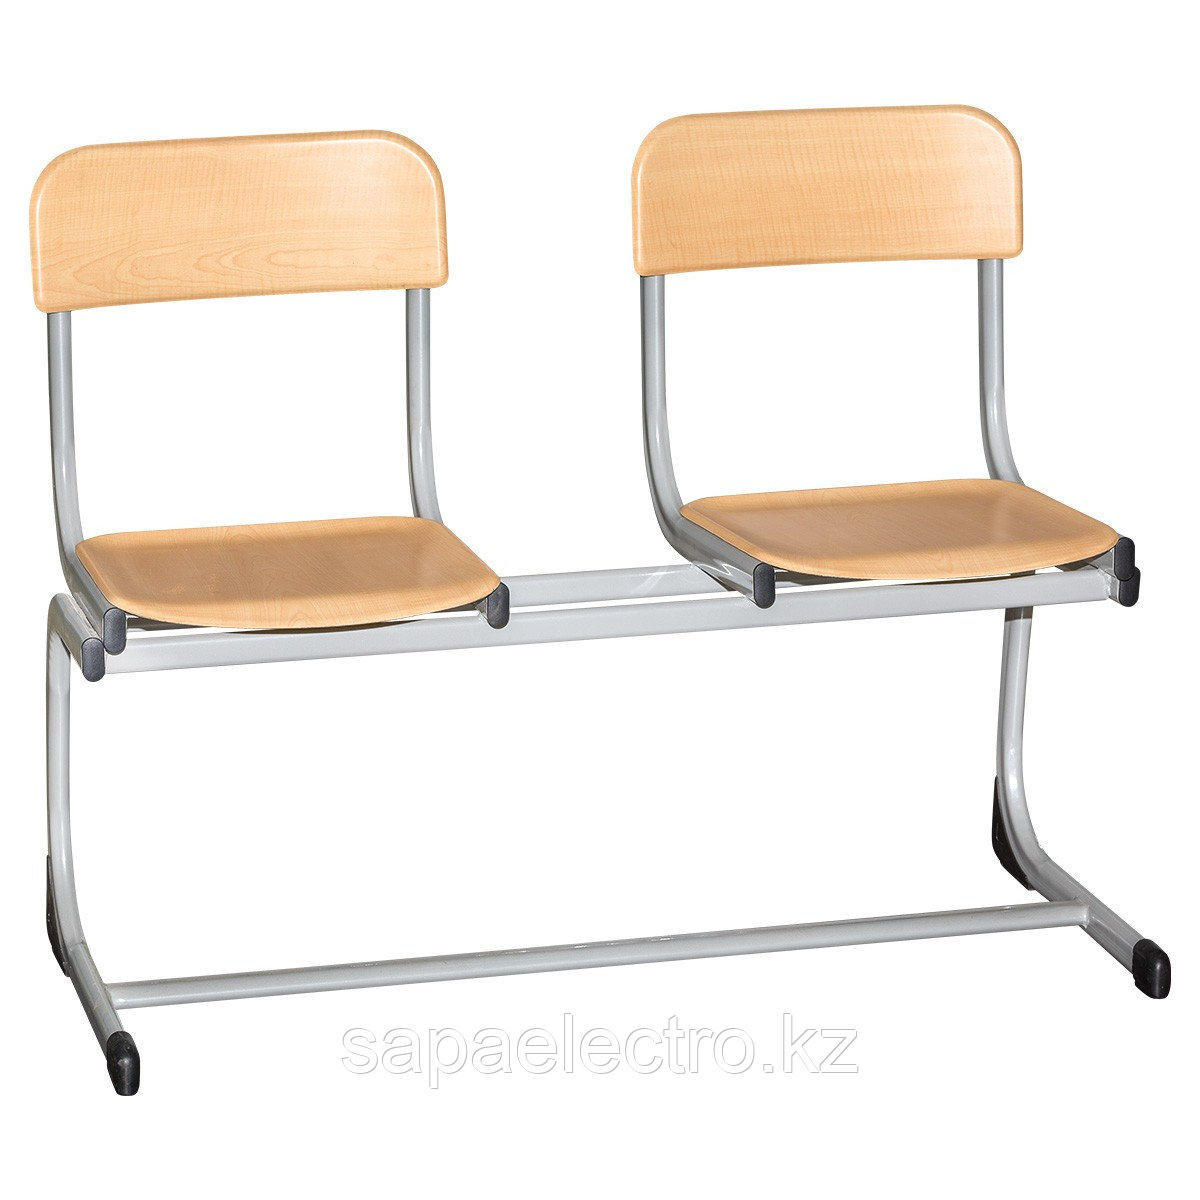 Школьные стулья 2LI (двойные) H-340мм Модель1 MGL (